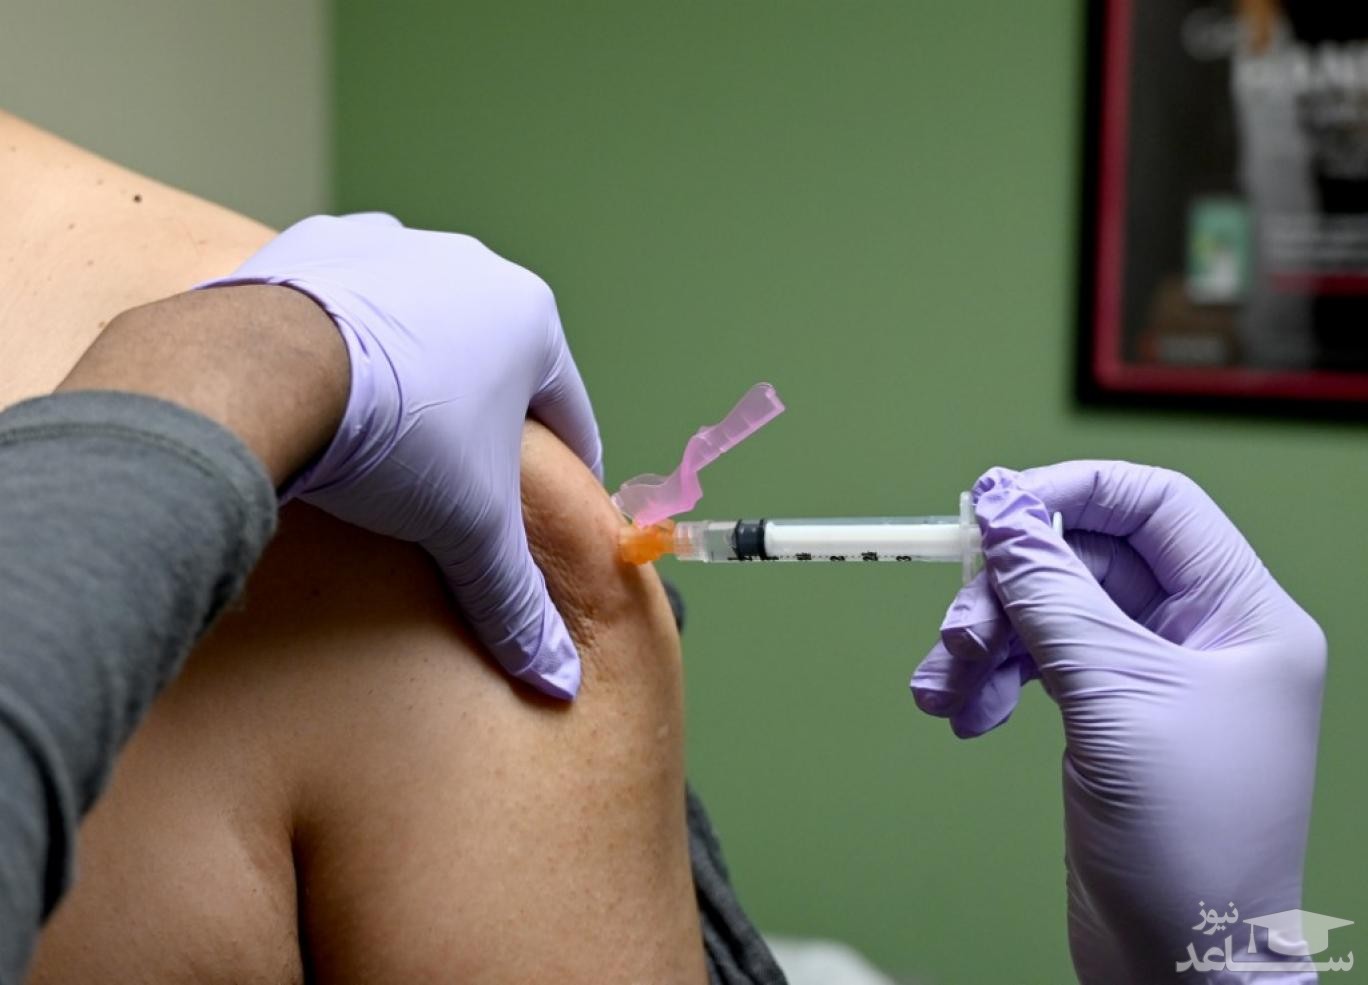 آخرین اخبار از وضعیت جسمانی دو داوطلب تزریق واکسن کرونای ایرانی